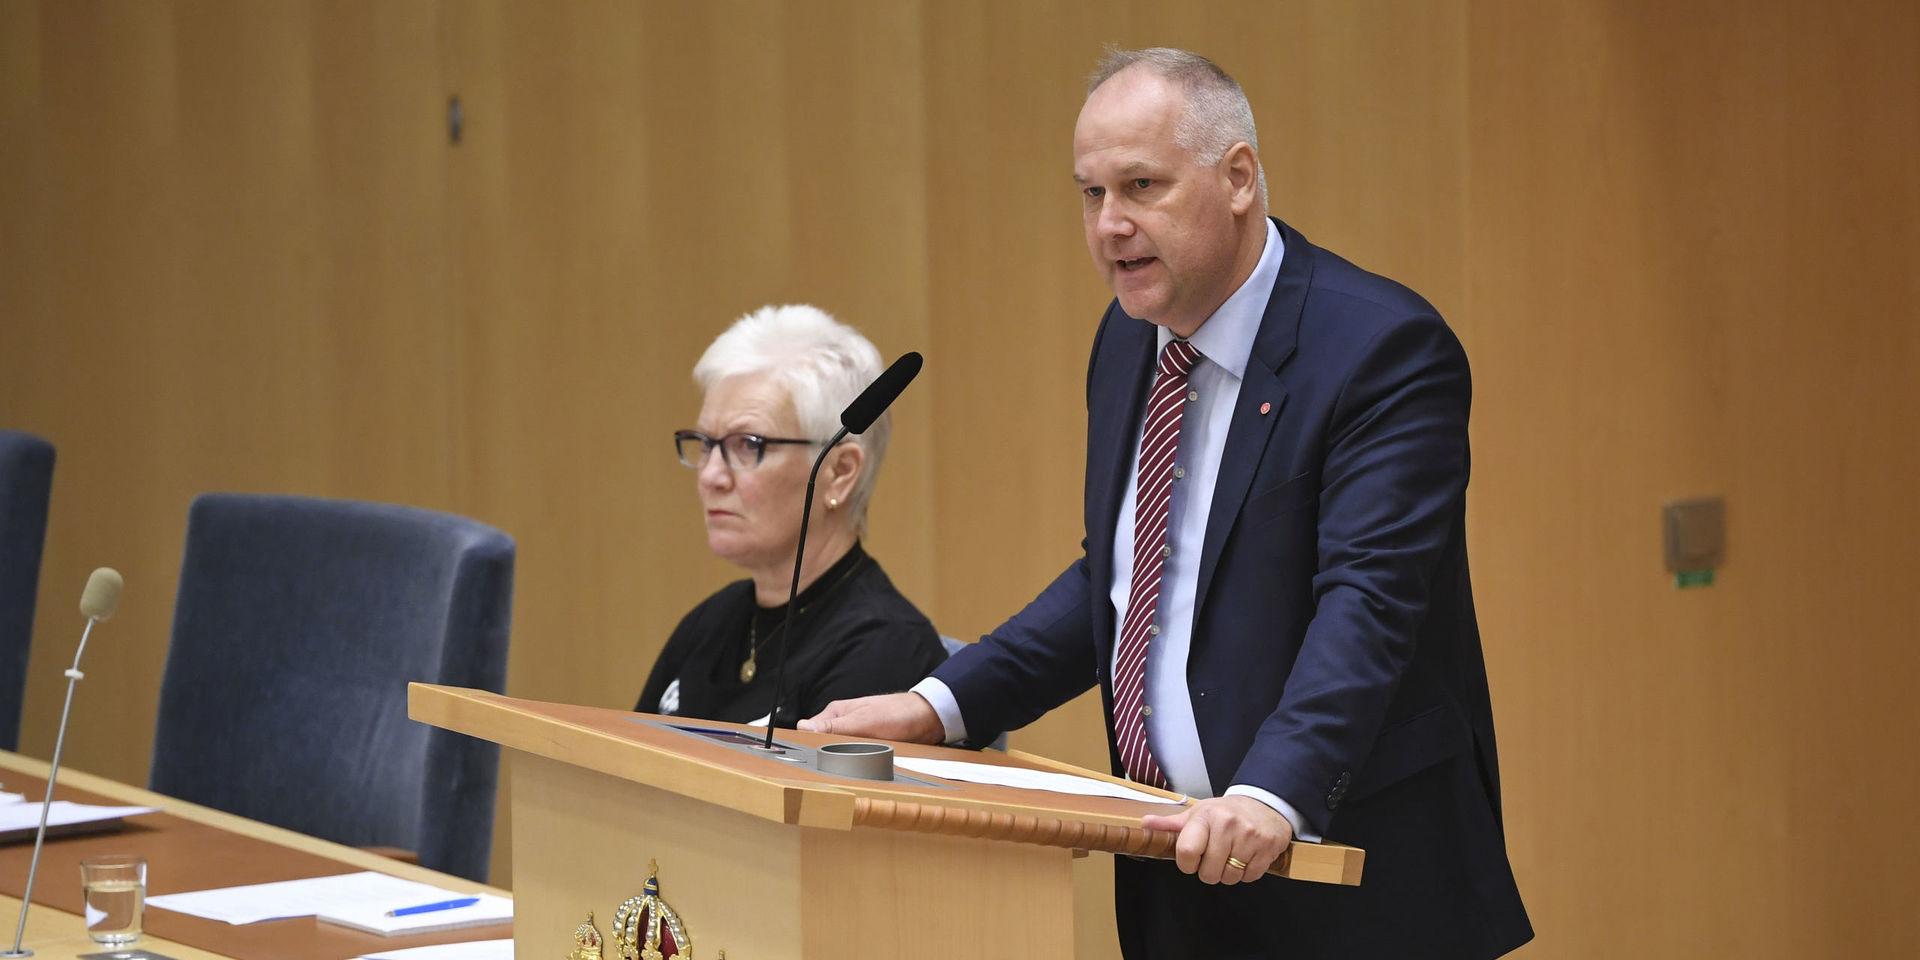 Vänsterpartiets Jonas Sjöstedt i talarstolen under dagens riksdagsdebatt.